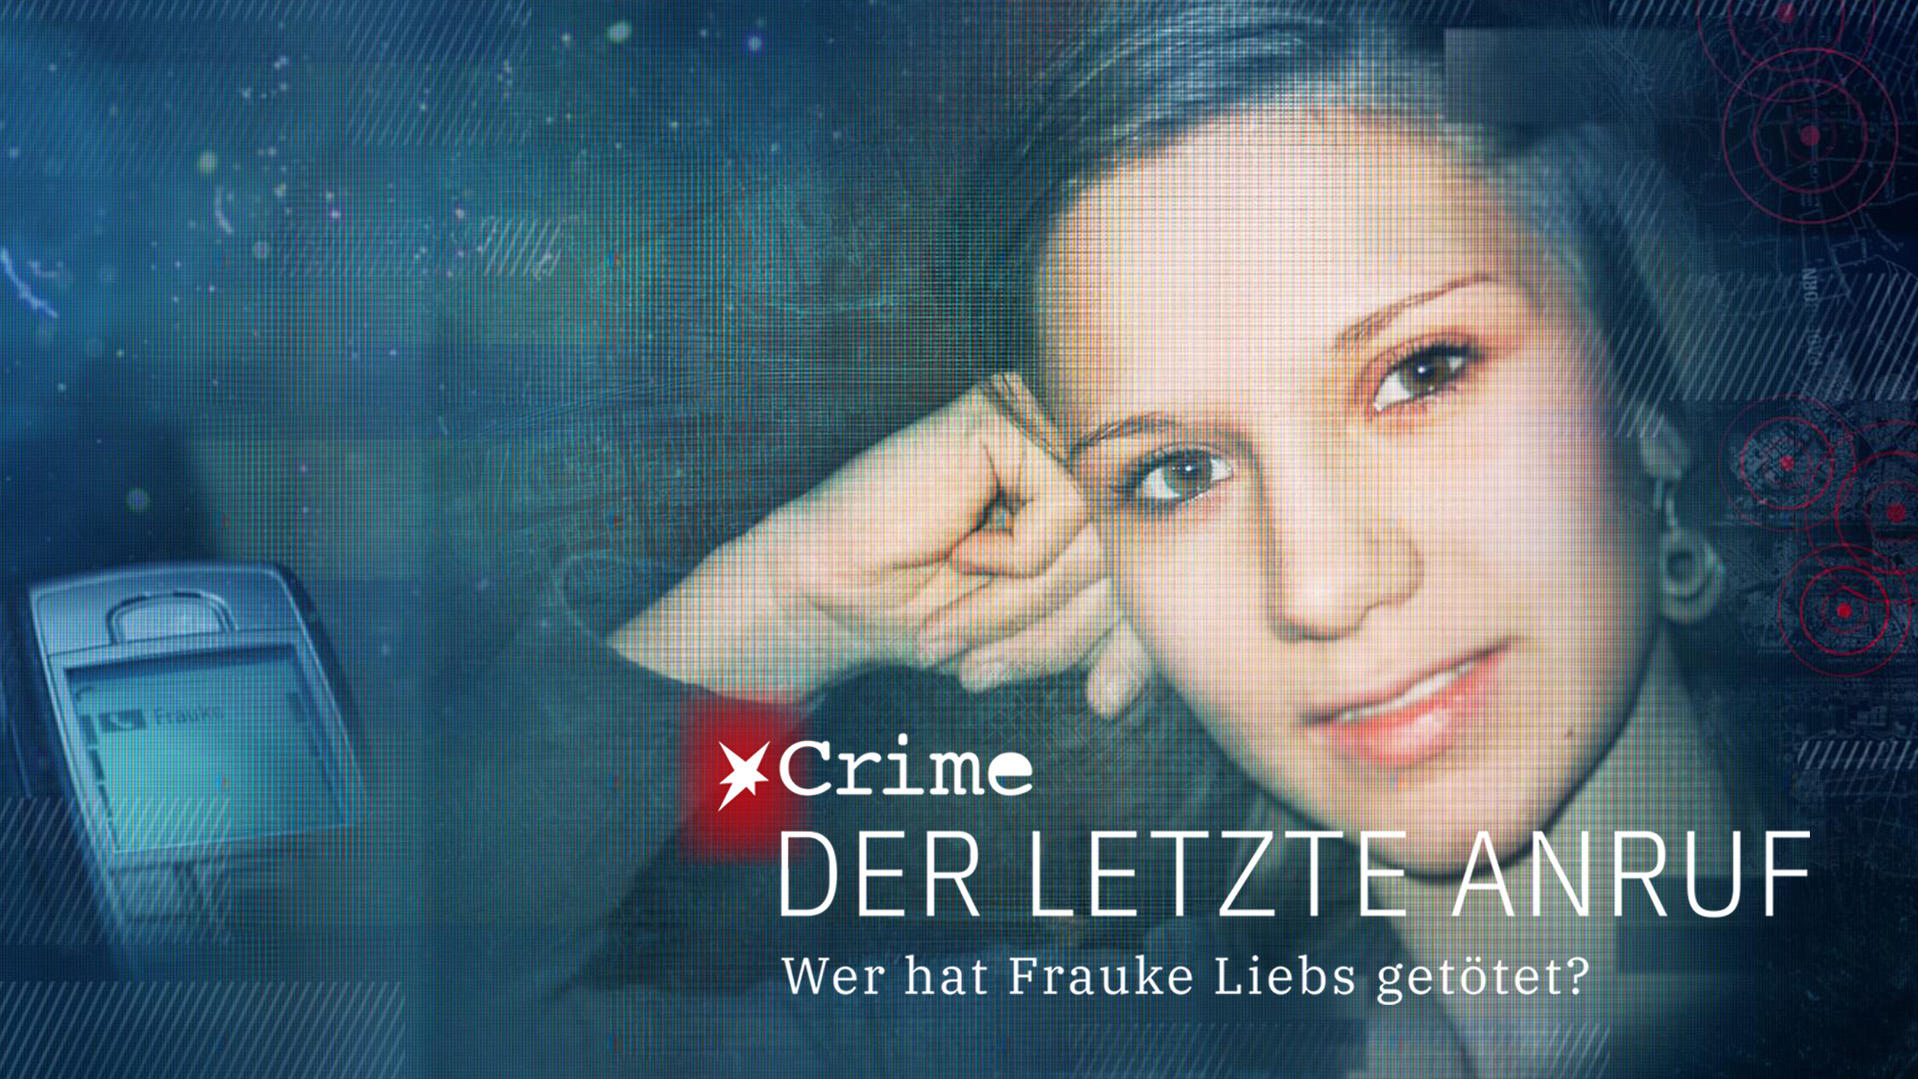 Die Doku "Der letzte Anruf" beschäftigt sich mit dem Kriminalfall Frauke Liebs